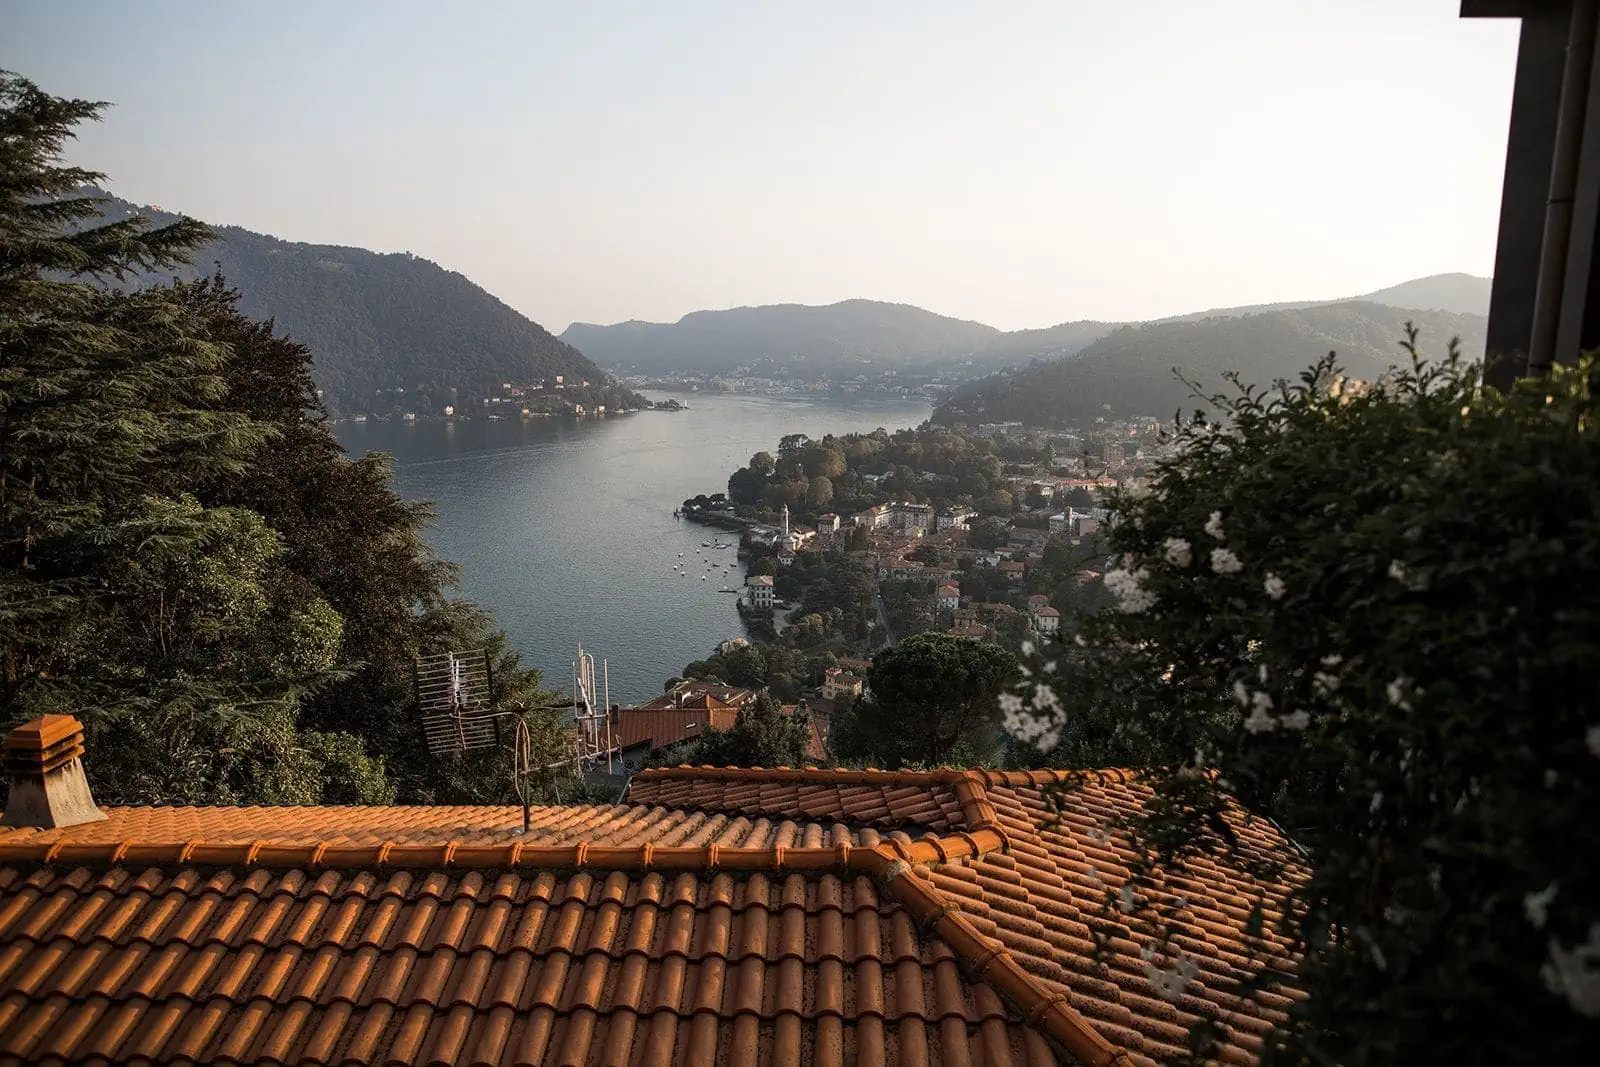 View of Lake Como from inside Gatto Nero